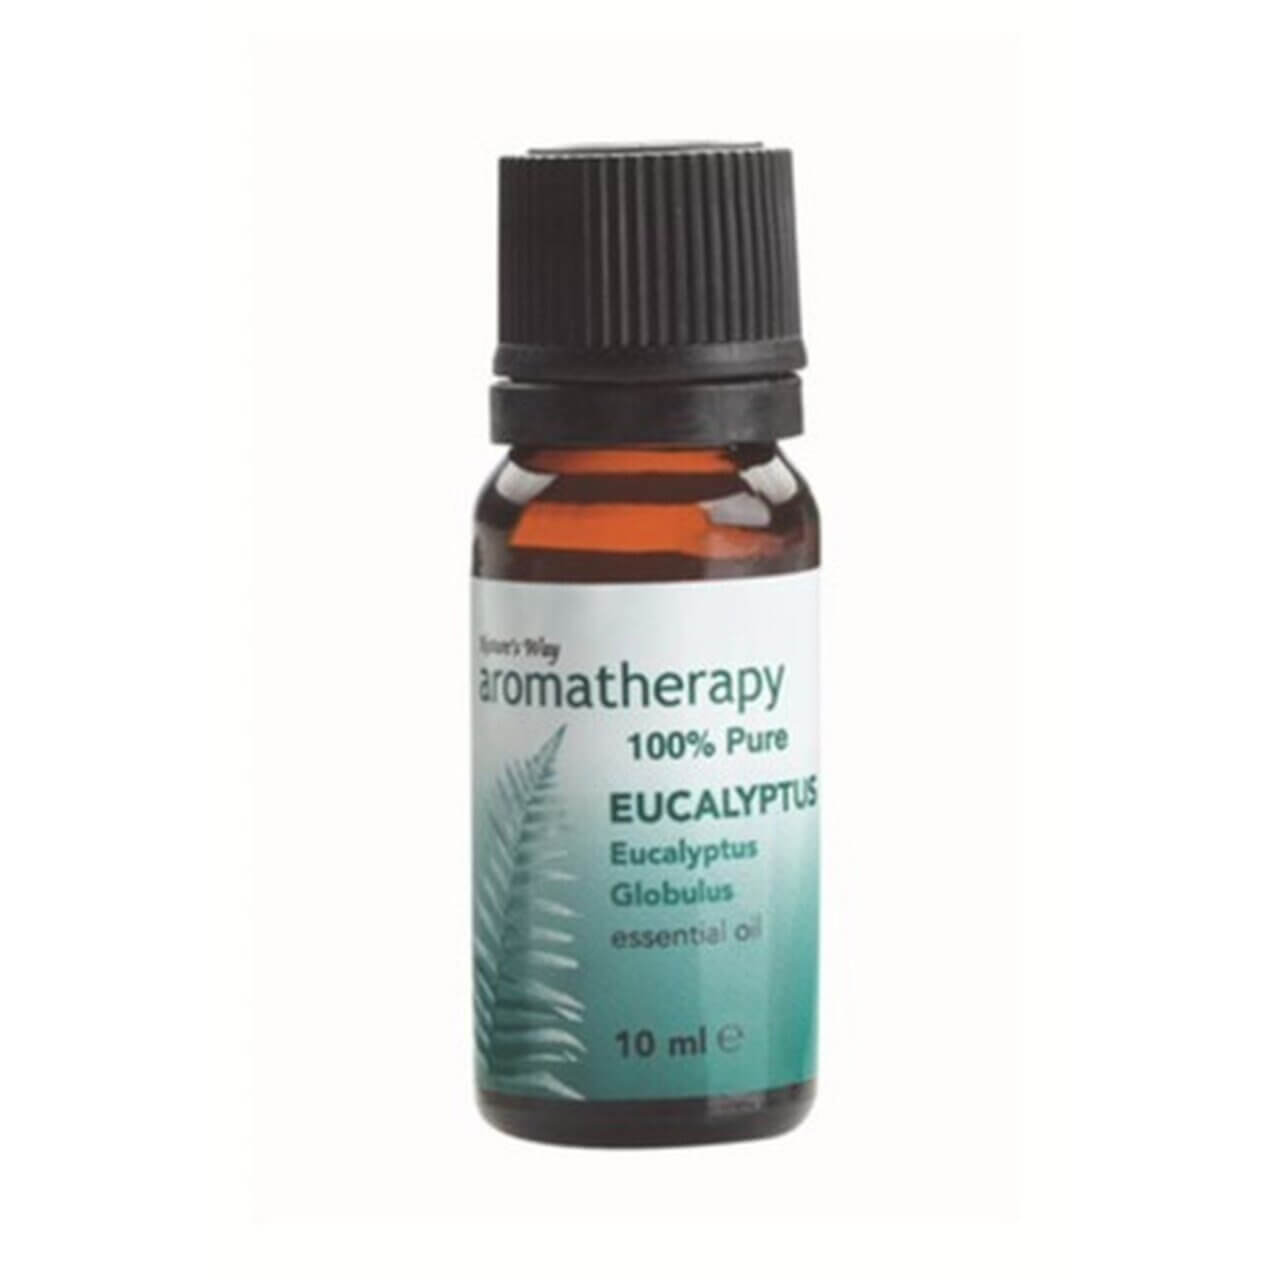 Aromatherapy Oil Natures Way Eucalyptus 10ml